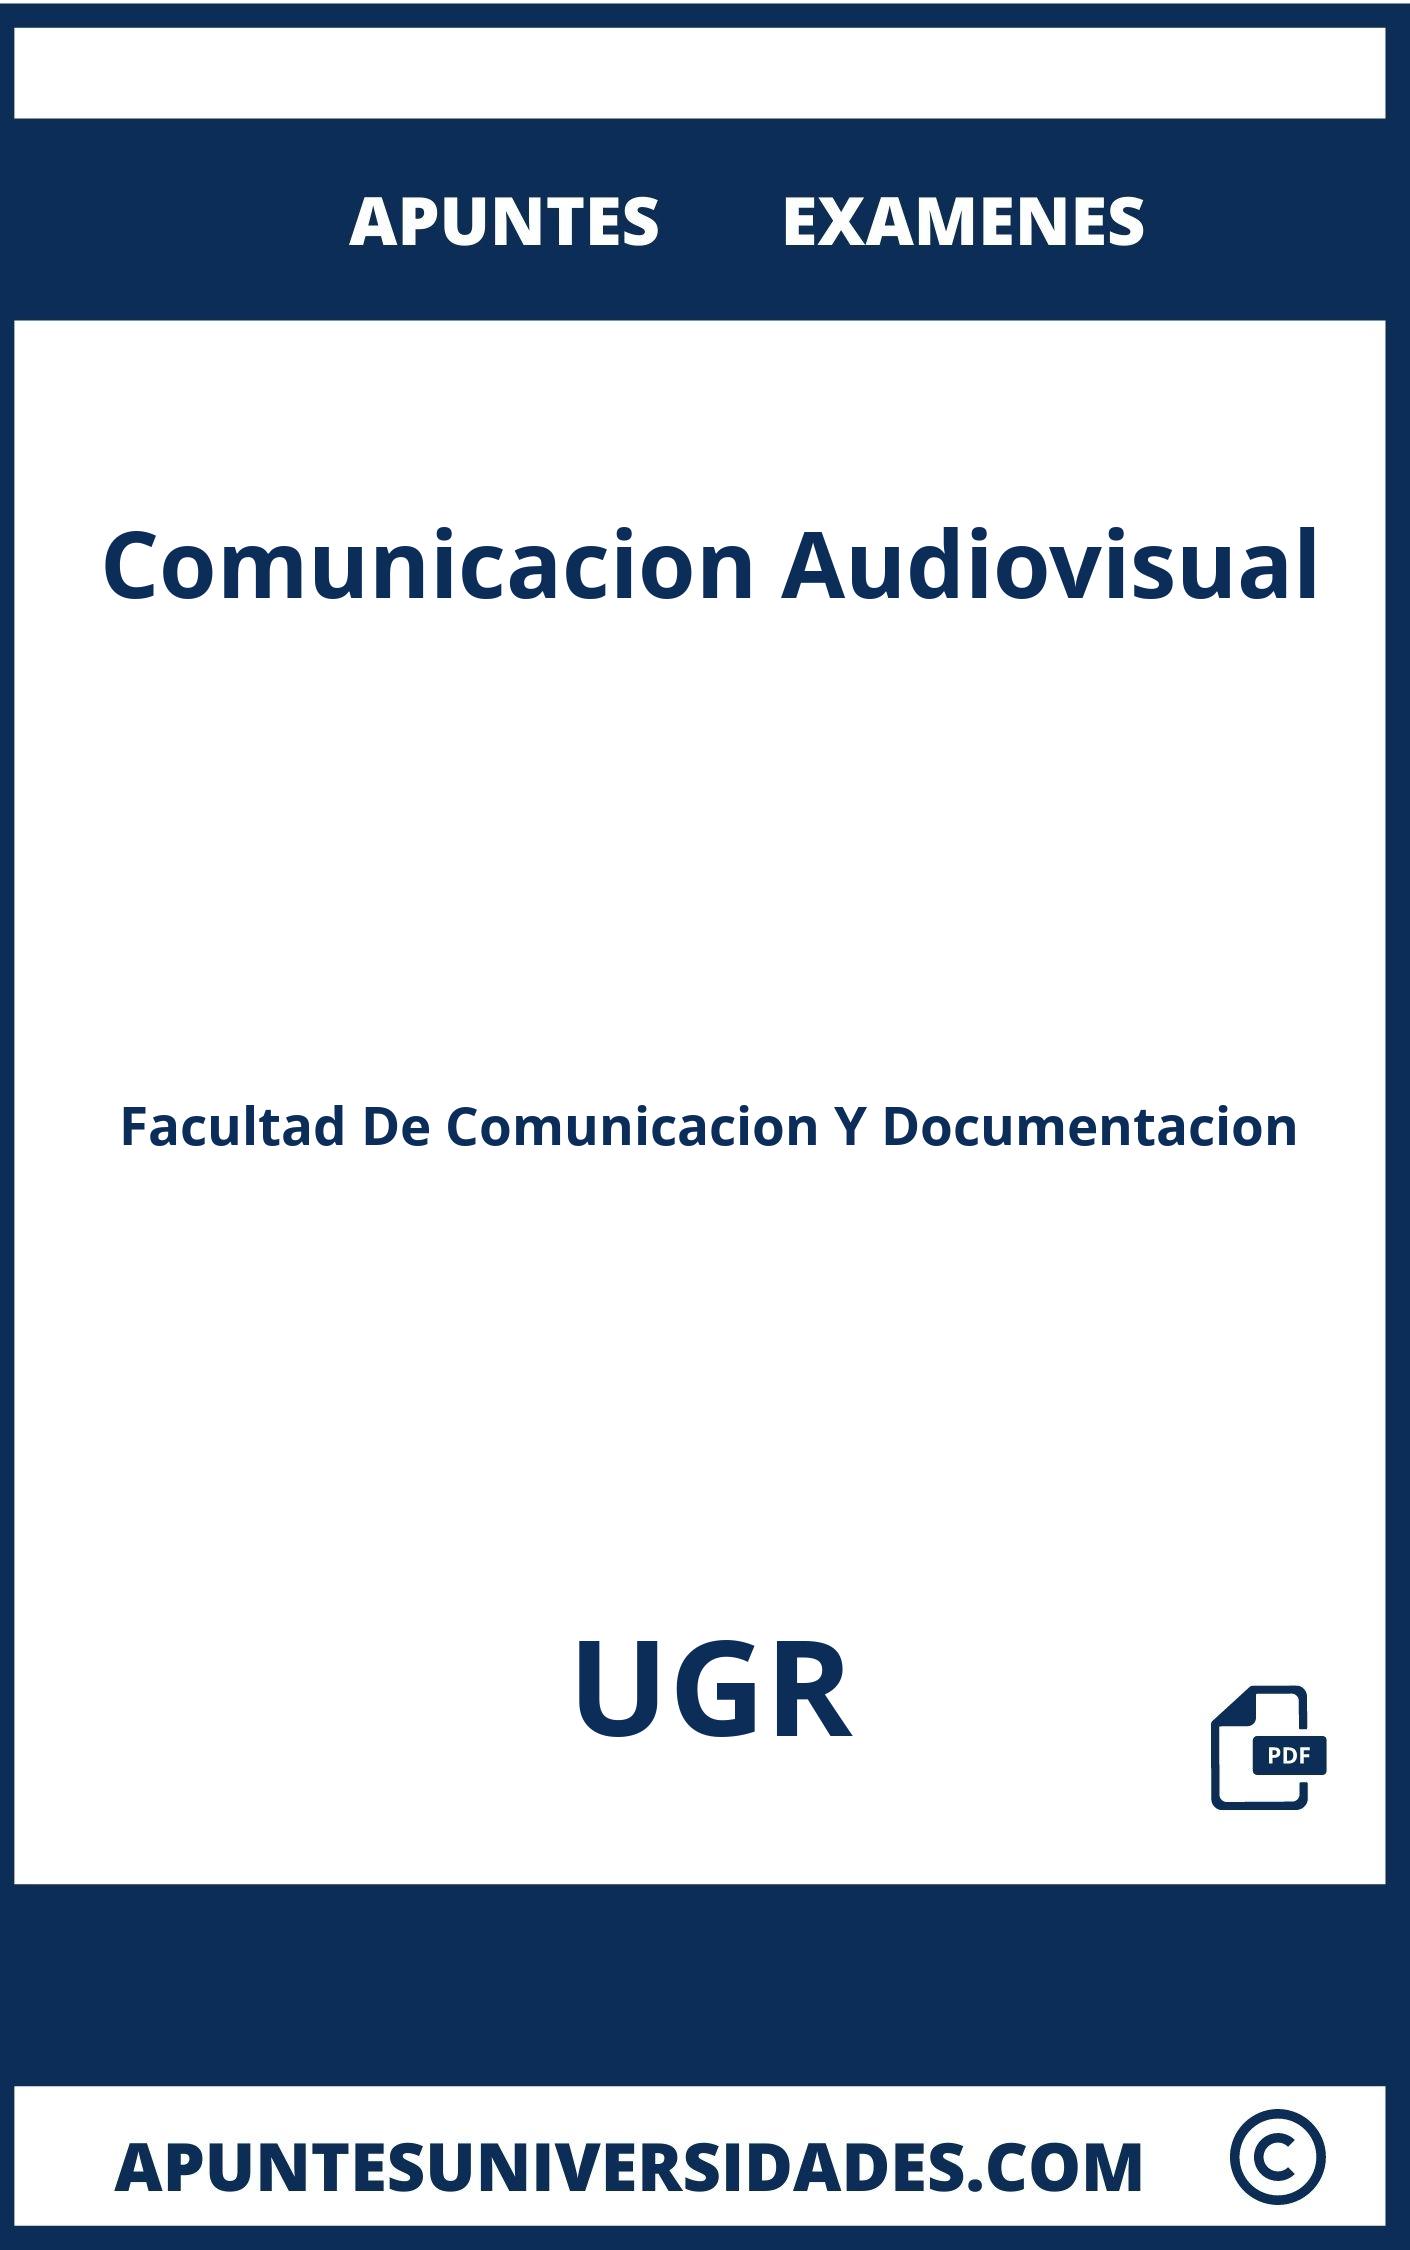 Comunicacion Audiovisual UGR Examenes Apuntes